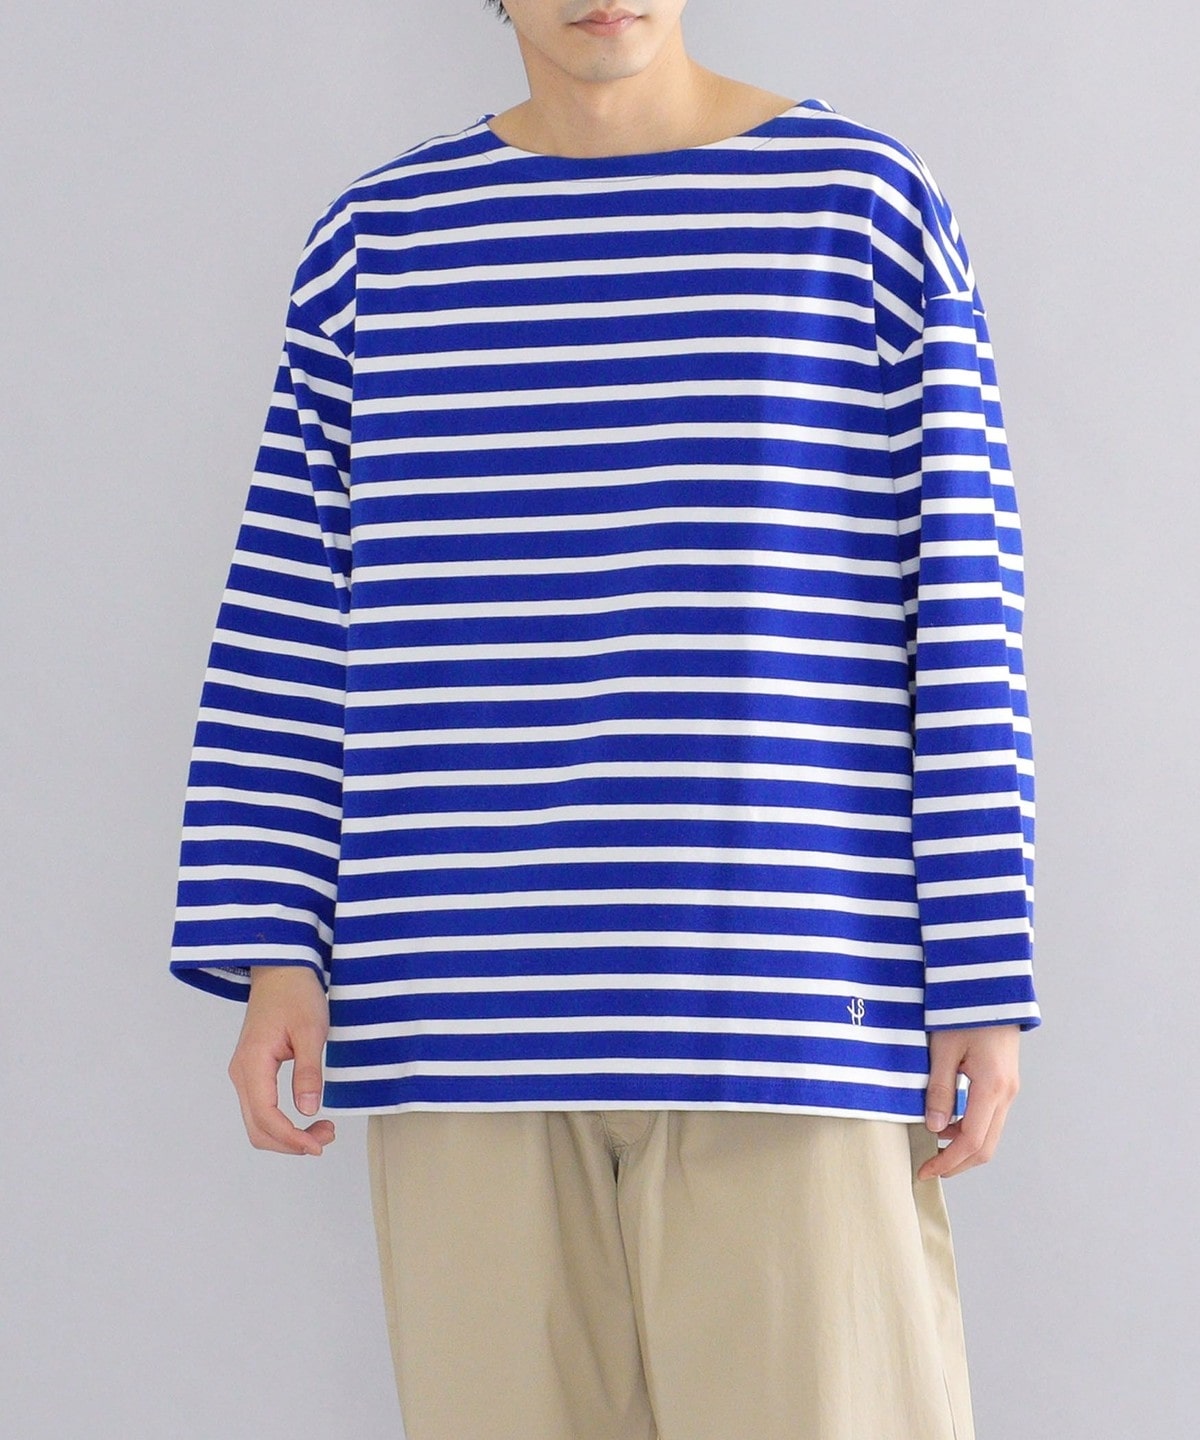 【WEB限定】SHIPS: ワンサイズフィット ビッグシルエット ワンポイント ロゴ ボーダー バスクシャツ (ロンT) ホワイト